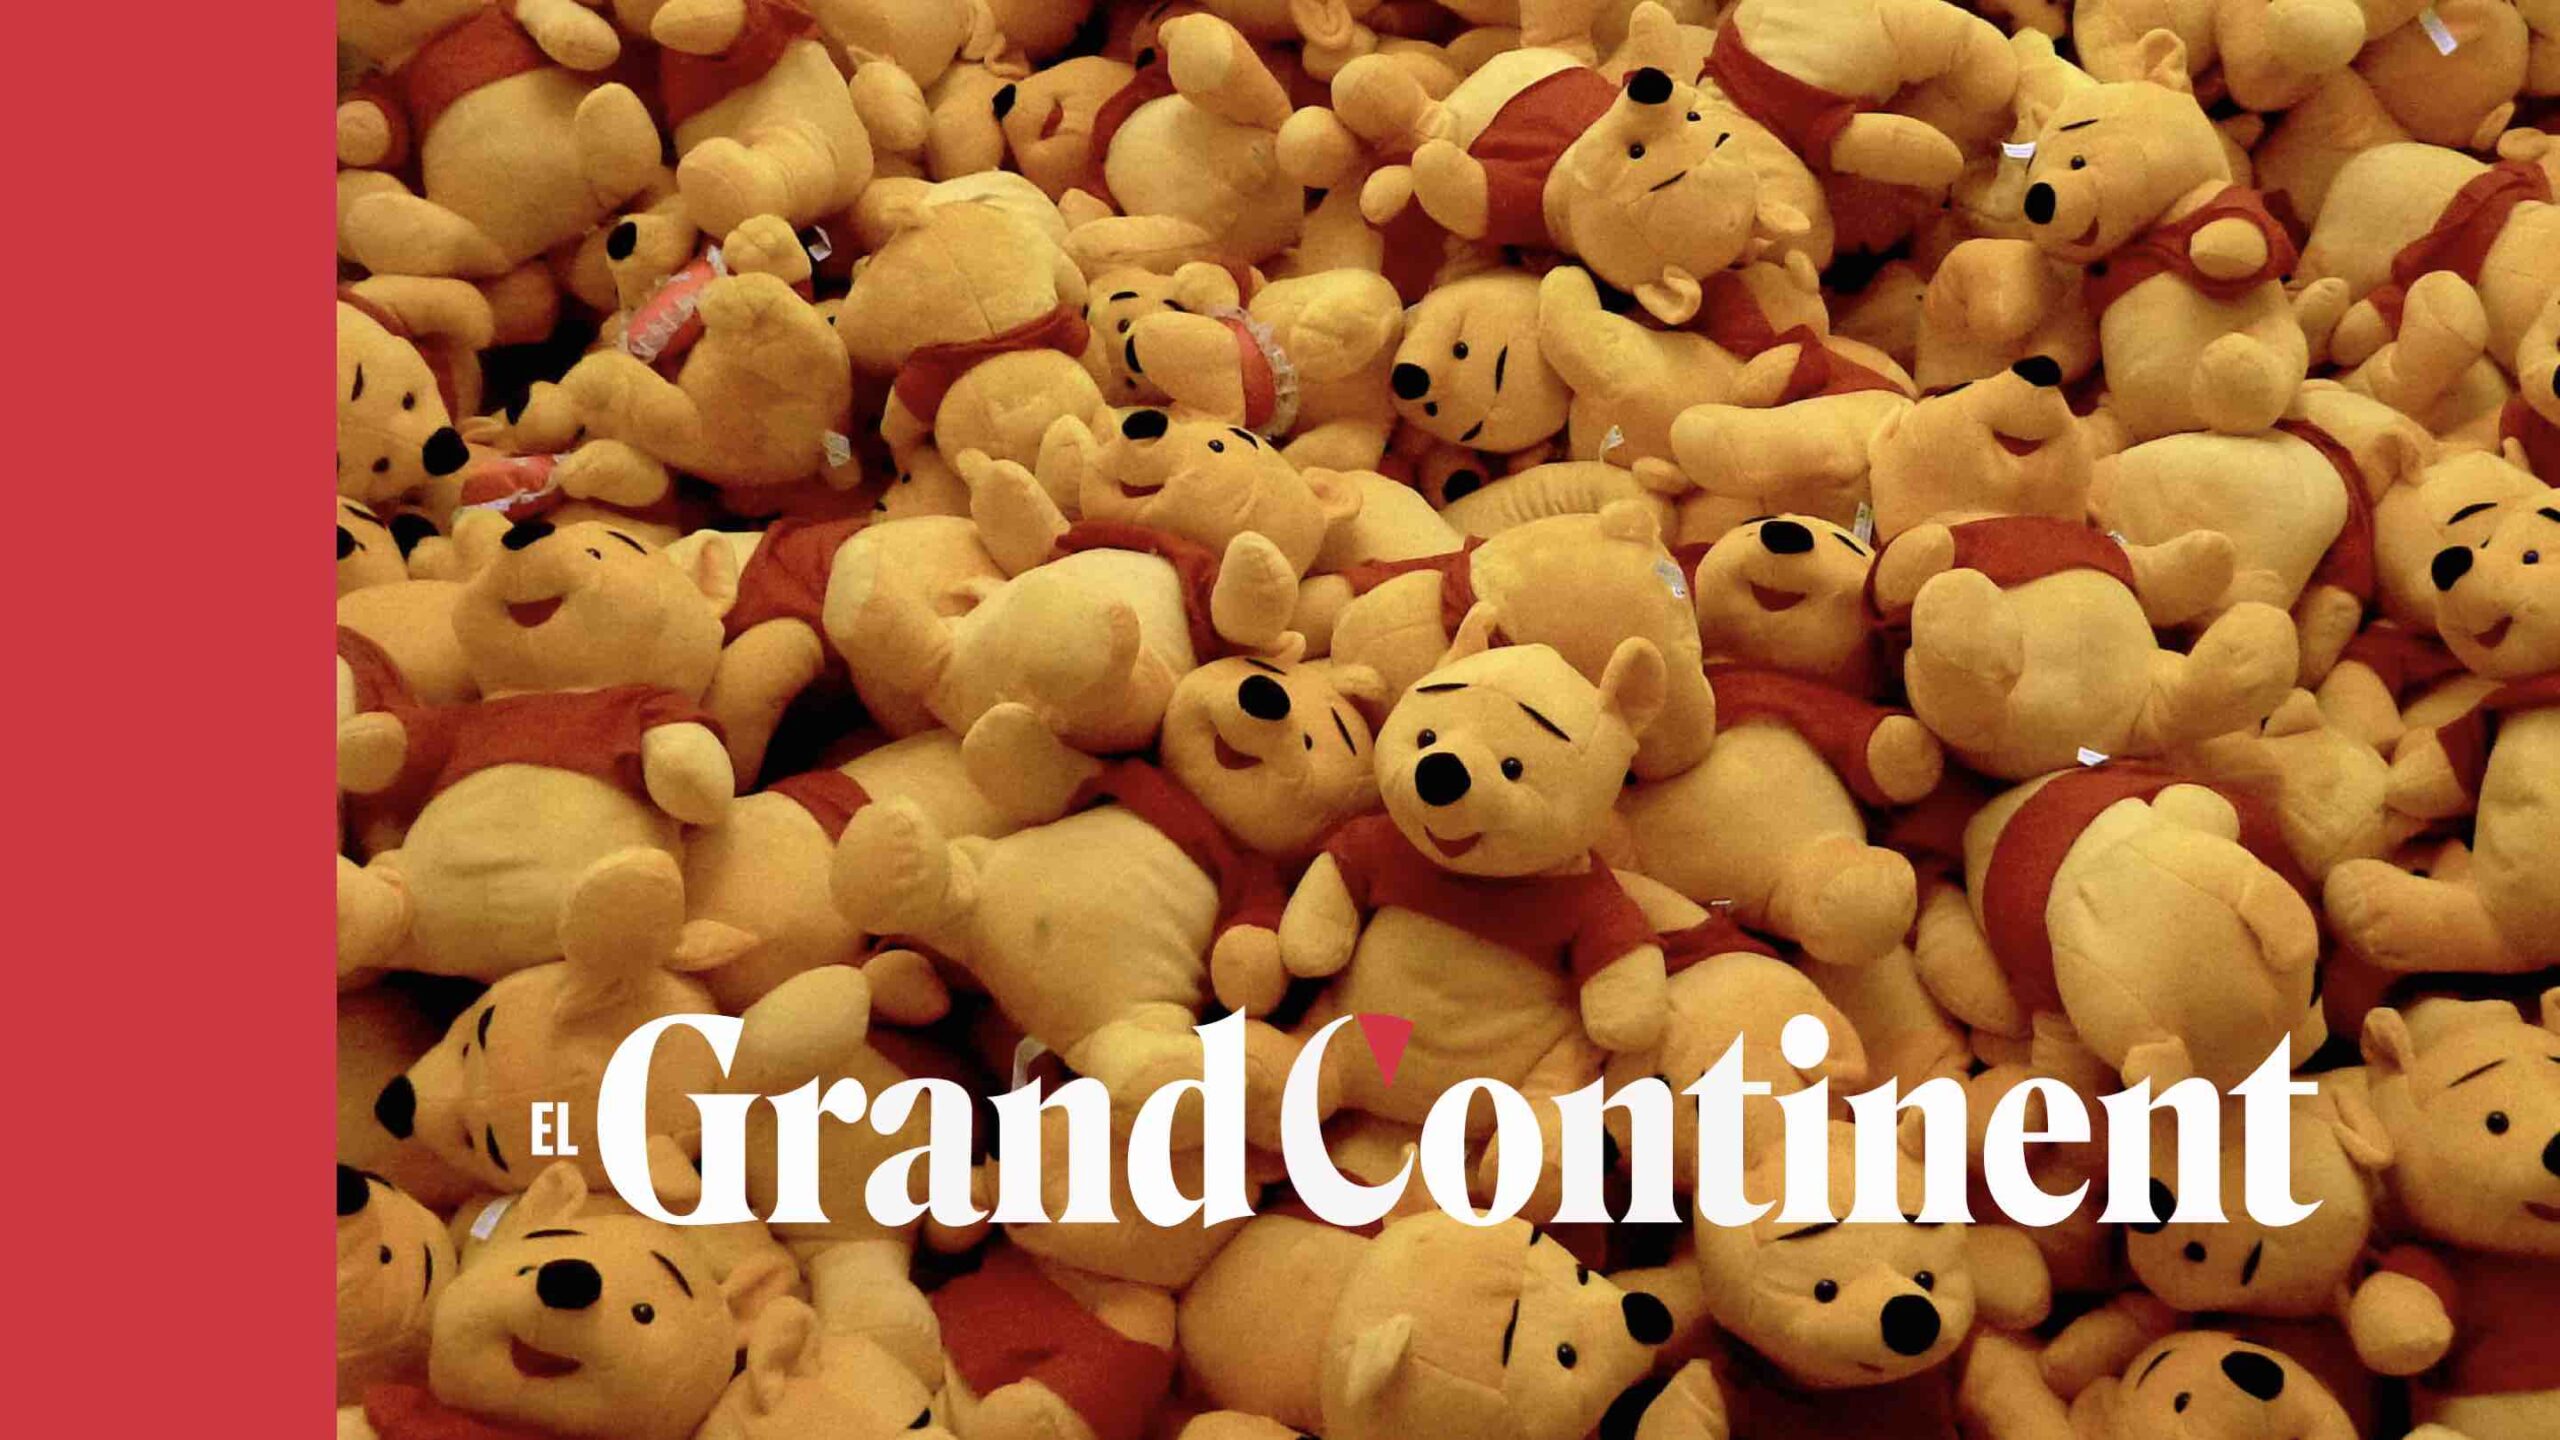 El origen centenario de Winnie the Pooh, TENDENCIAS